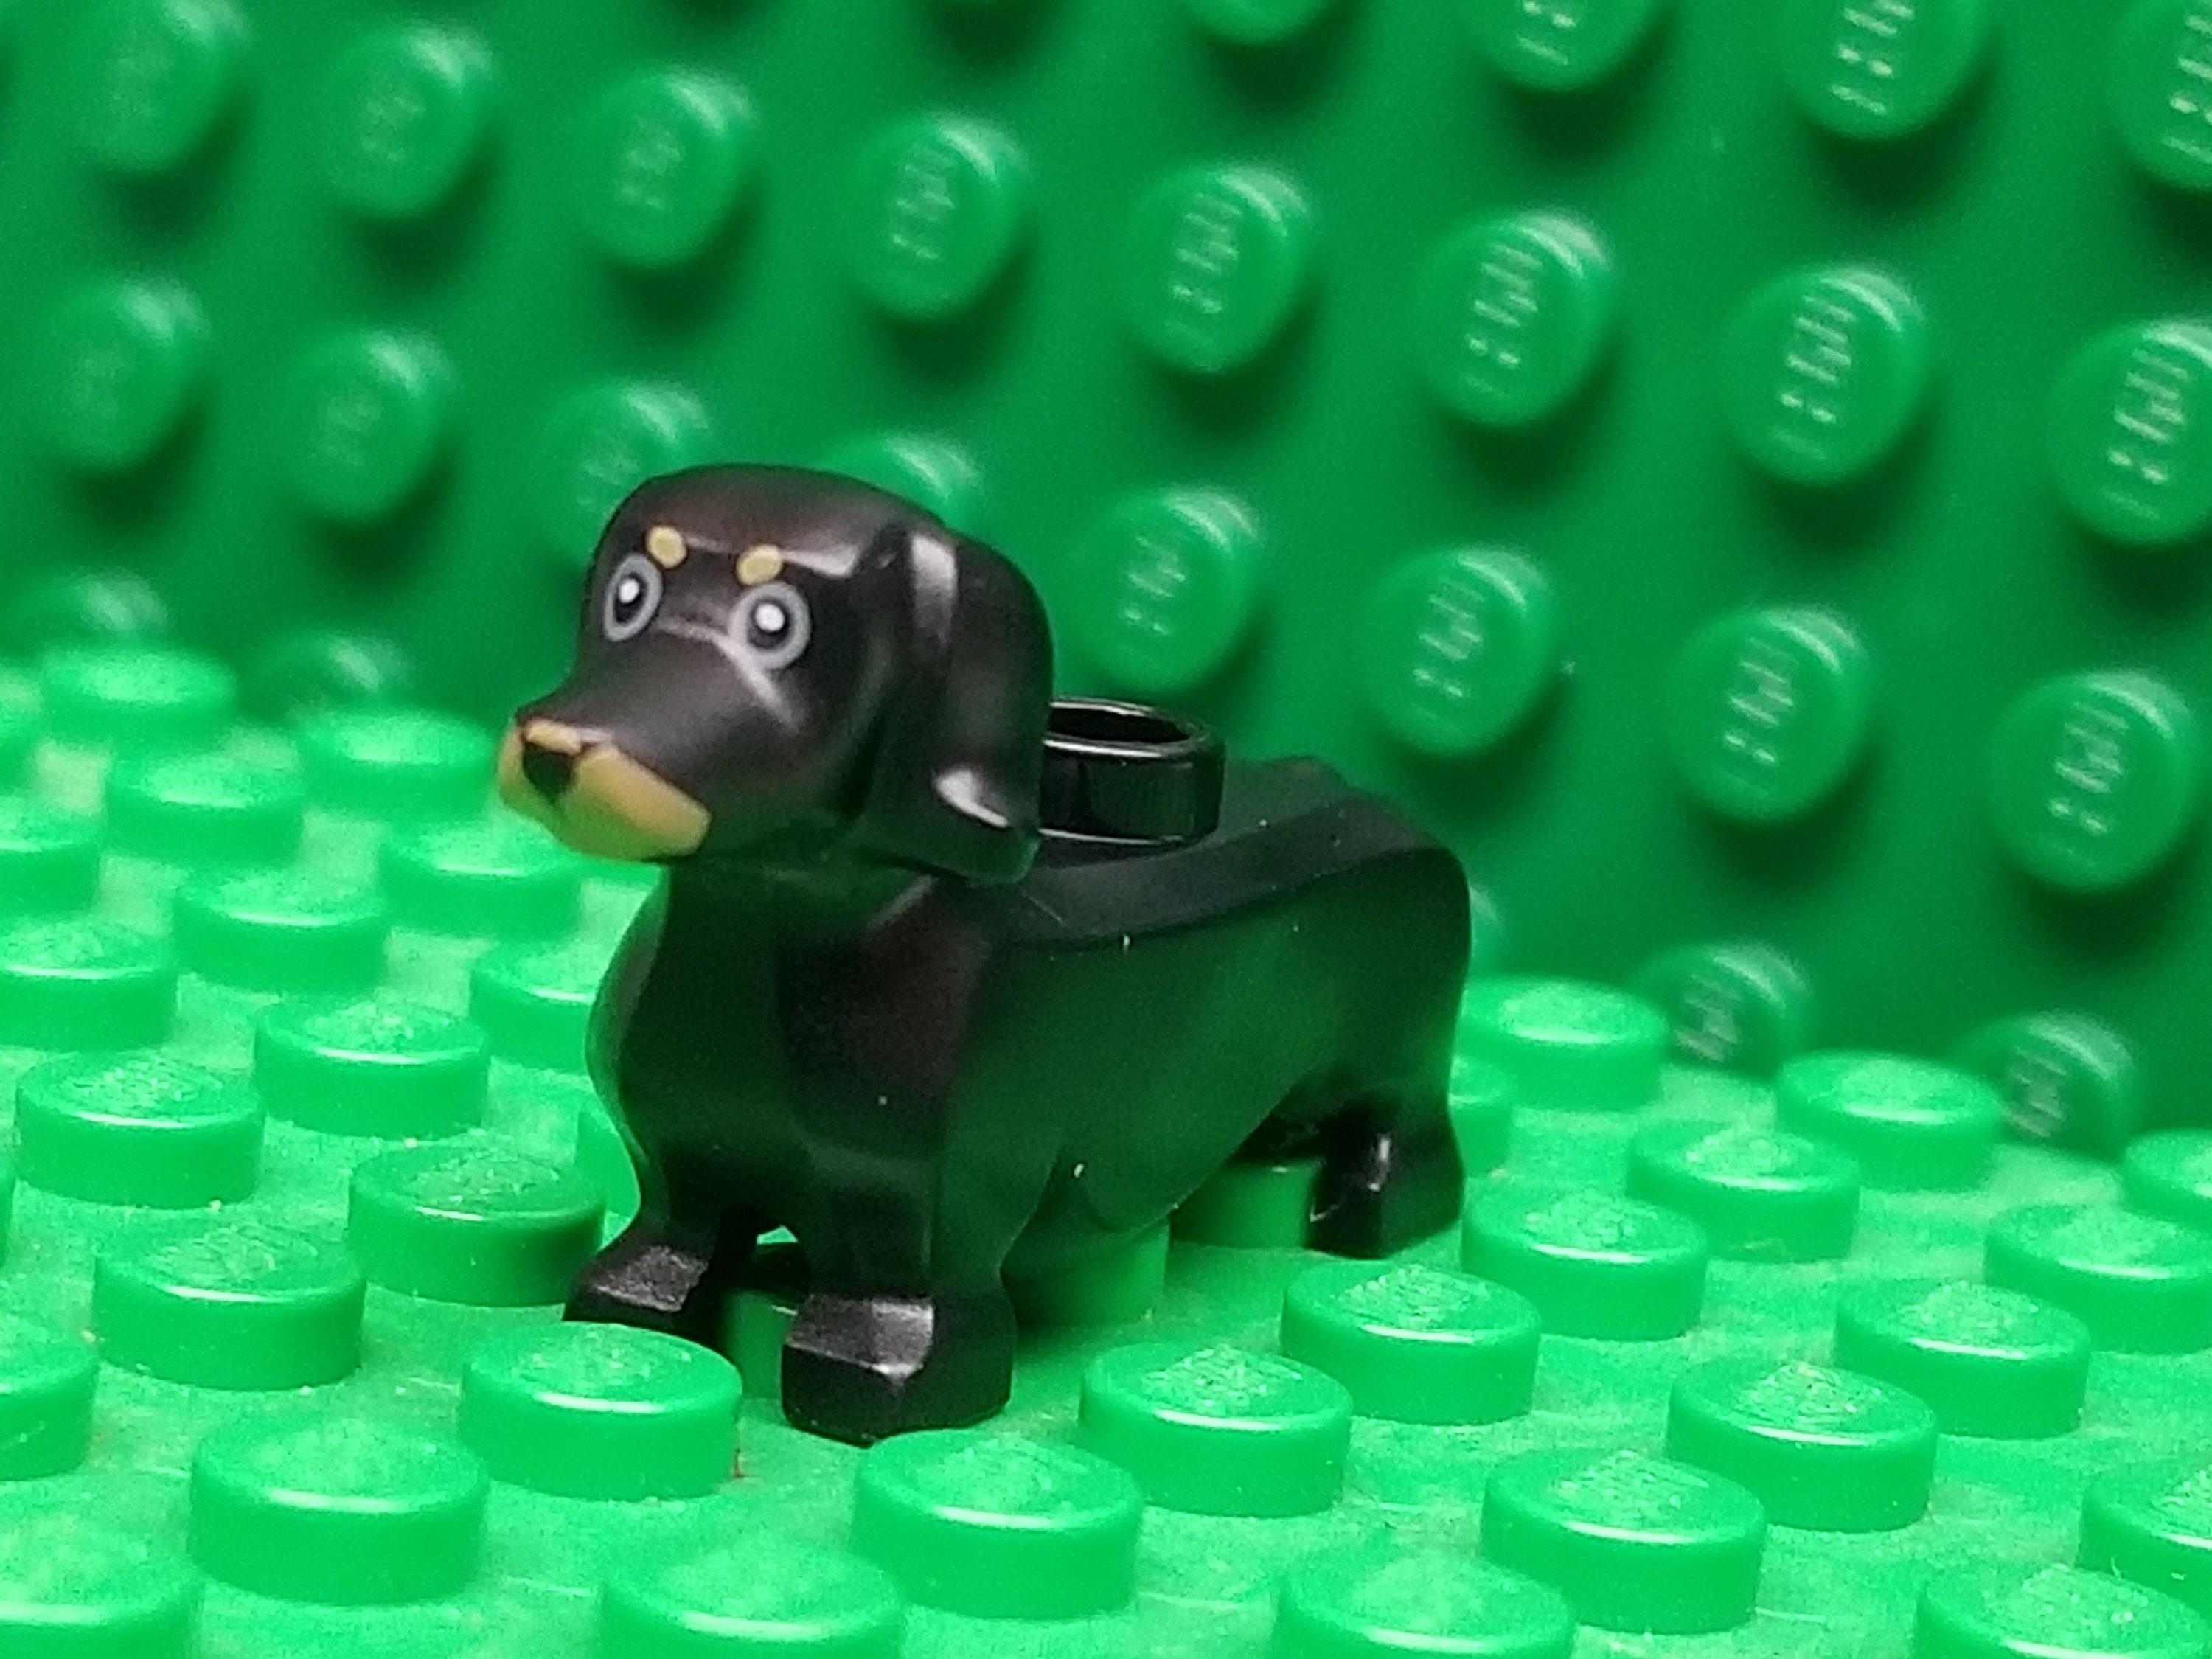 Dachshund  Lego animals, Legos, Lego projects